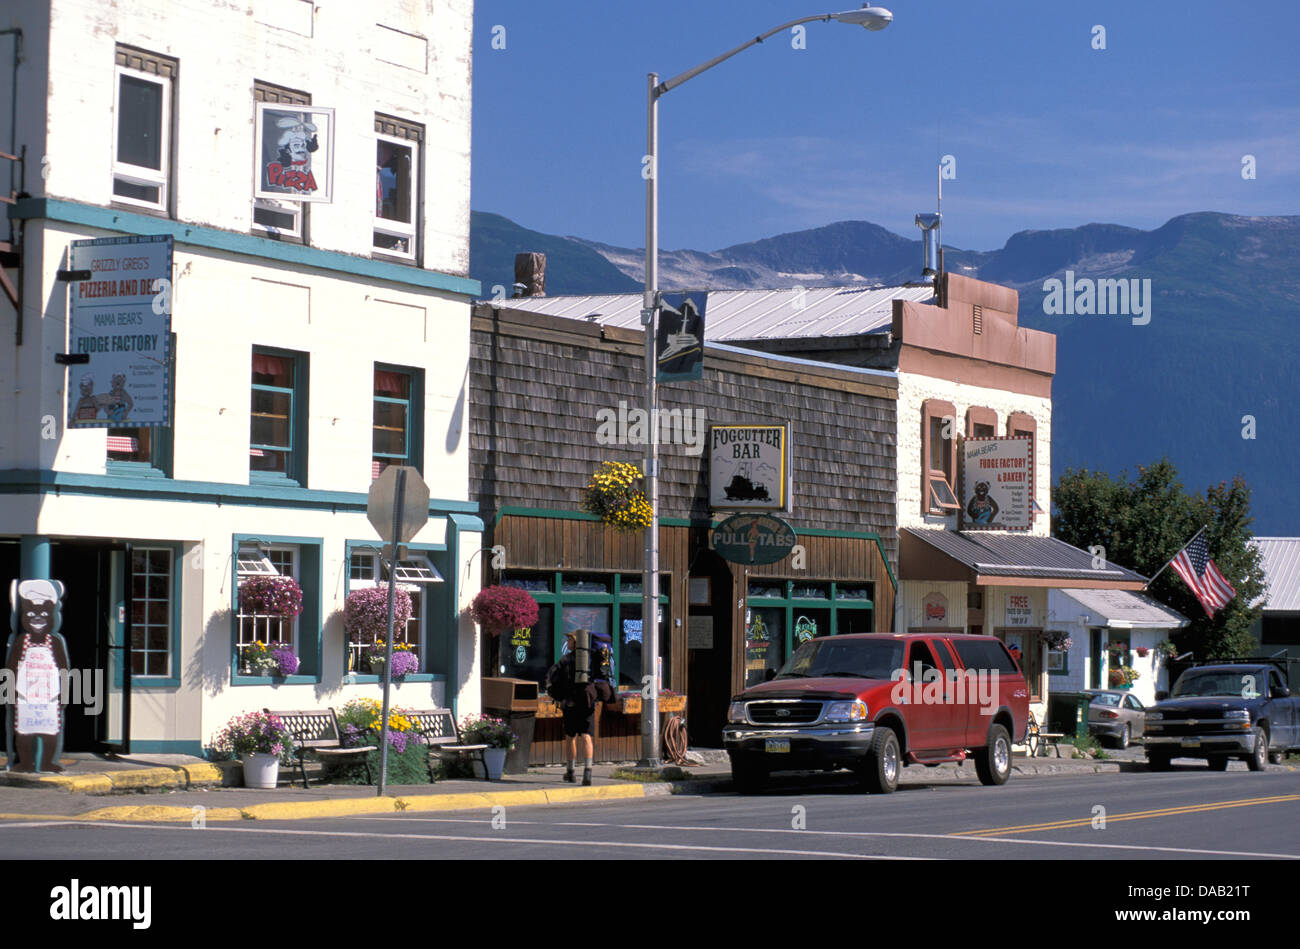 Haines, Alaska, EE.UU., pequeña ciudad, edificios antiguos, soleado, los coches aparcados, flores en macetas, bar, blue sky Foto de stock